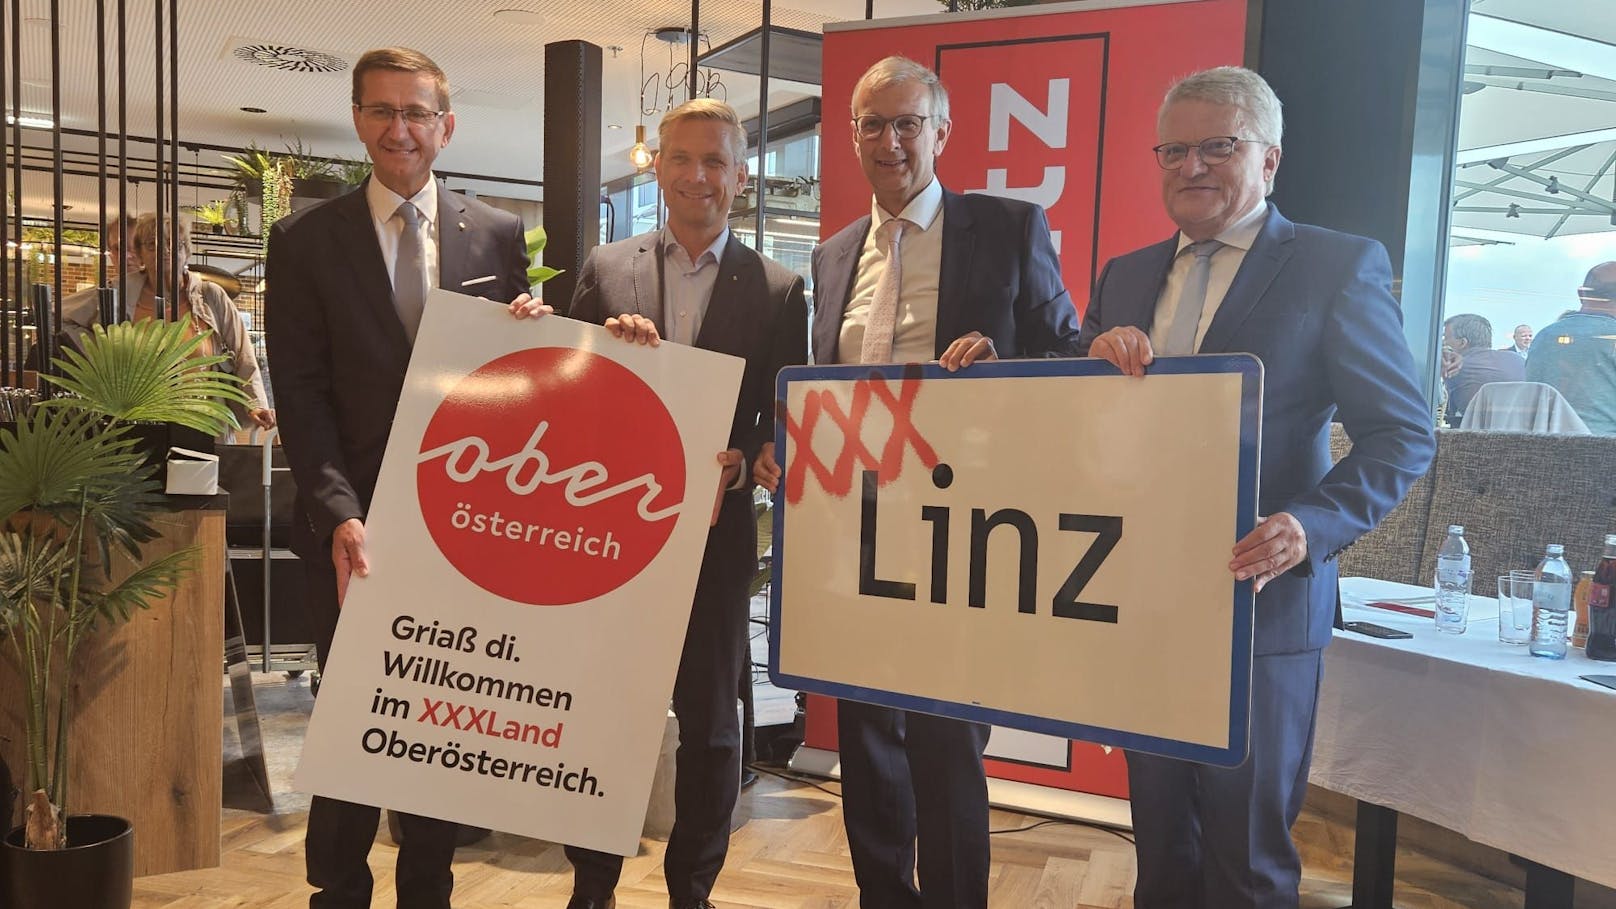 Die Landesräte Markus Achleitner und Wolfgang Hattmannsdorfer (beide ÖVP) gemeinsam mit Lutz-Unternehmenssprecher Thomas Saliger und Linzer Bürgermeister Klaus Luger (SPÖ) bei der Eröffnungsfeier.